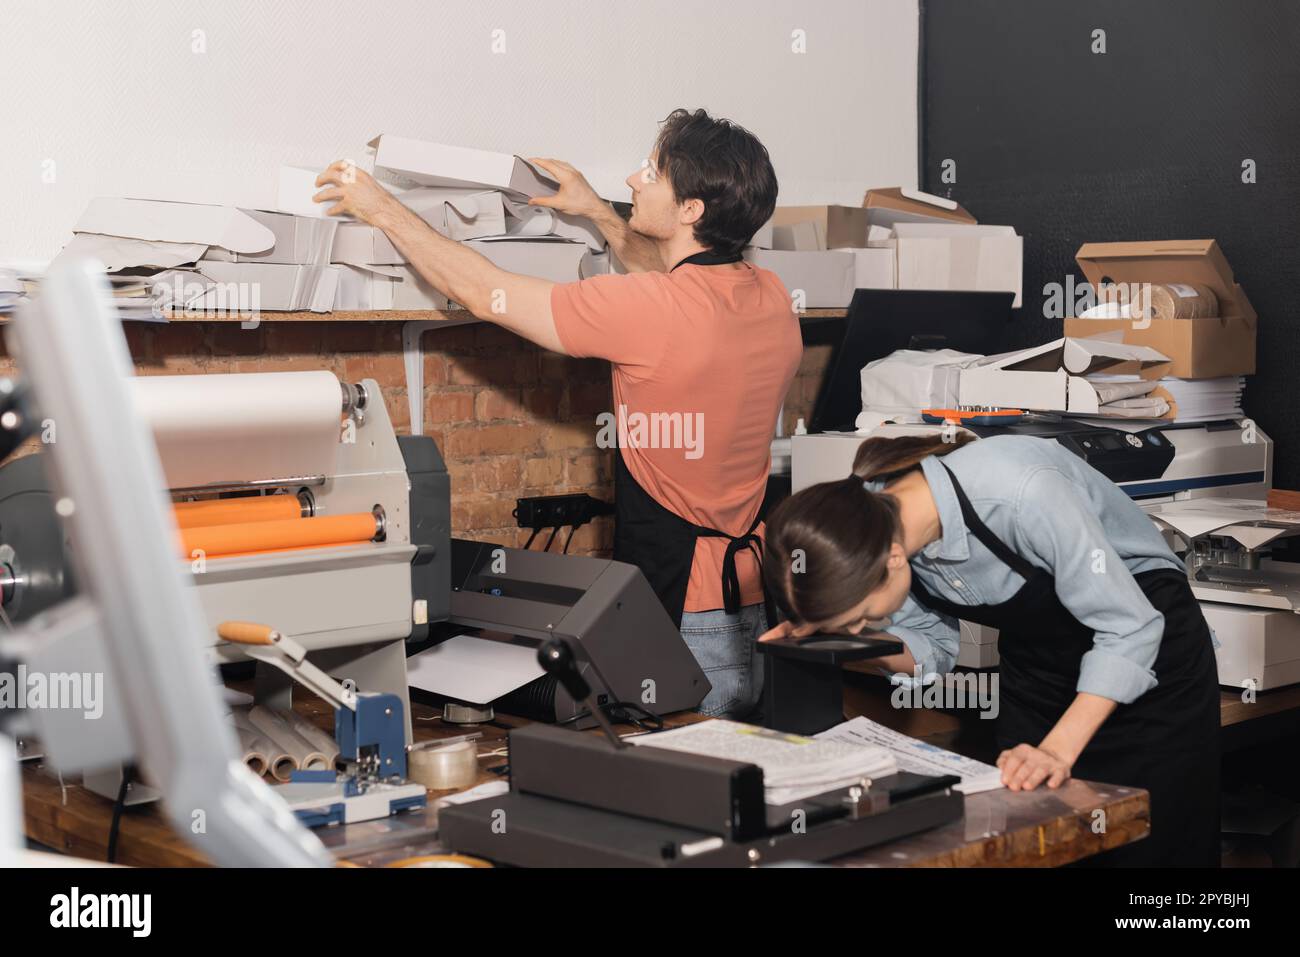 tipógrafo en delantal alcanzando cajas de cartón plegadas junto a colega y equipo en el centro de impresión, imagen de stock Foto de stock